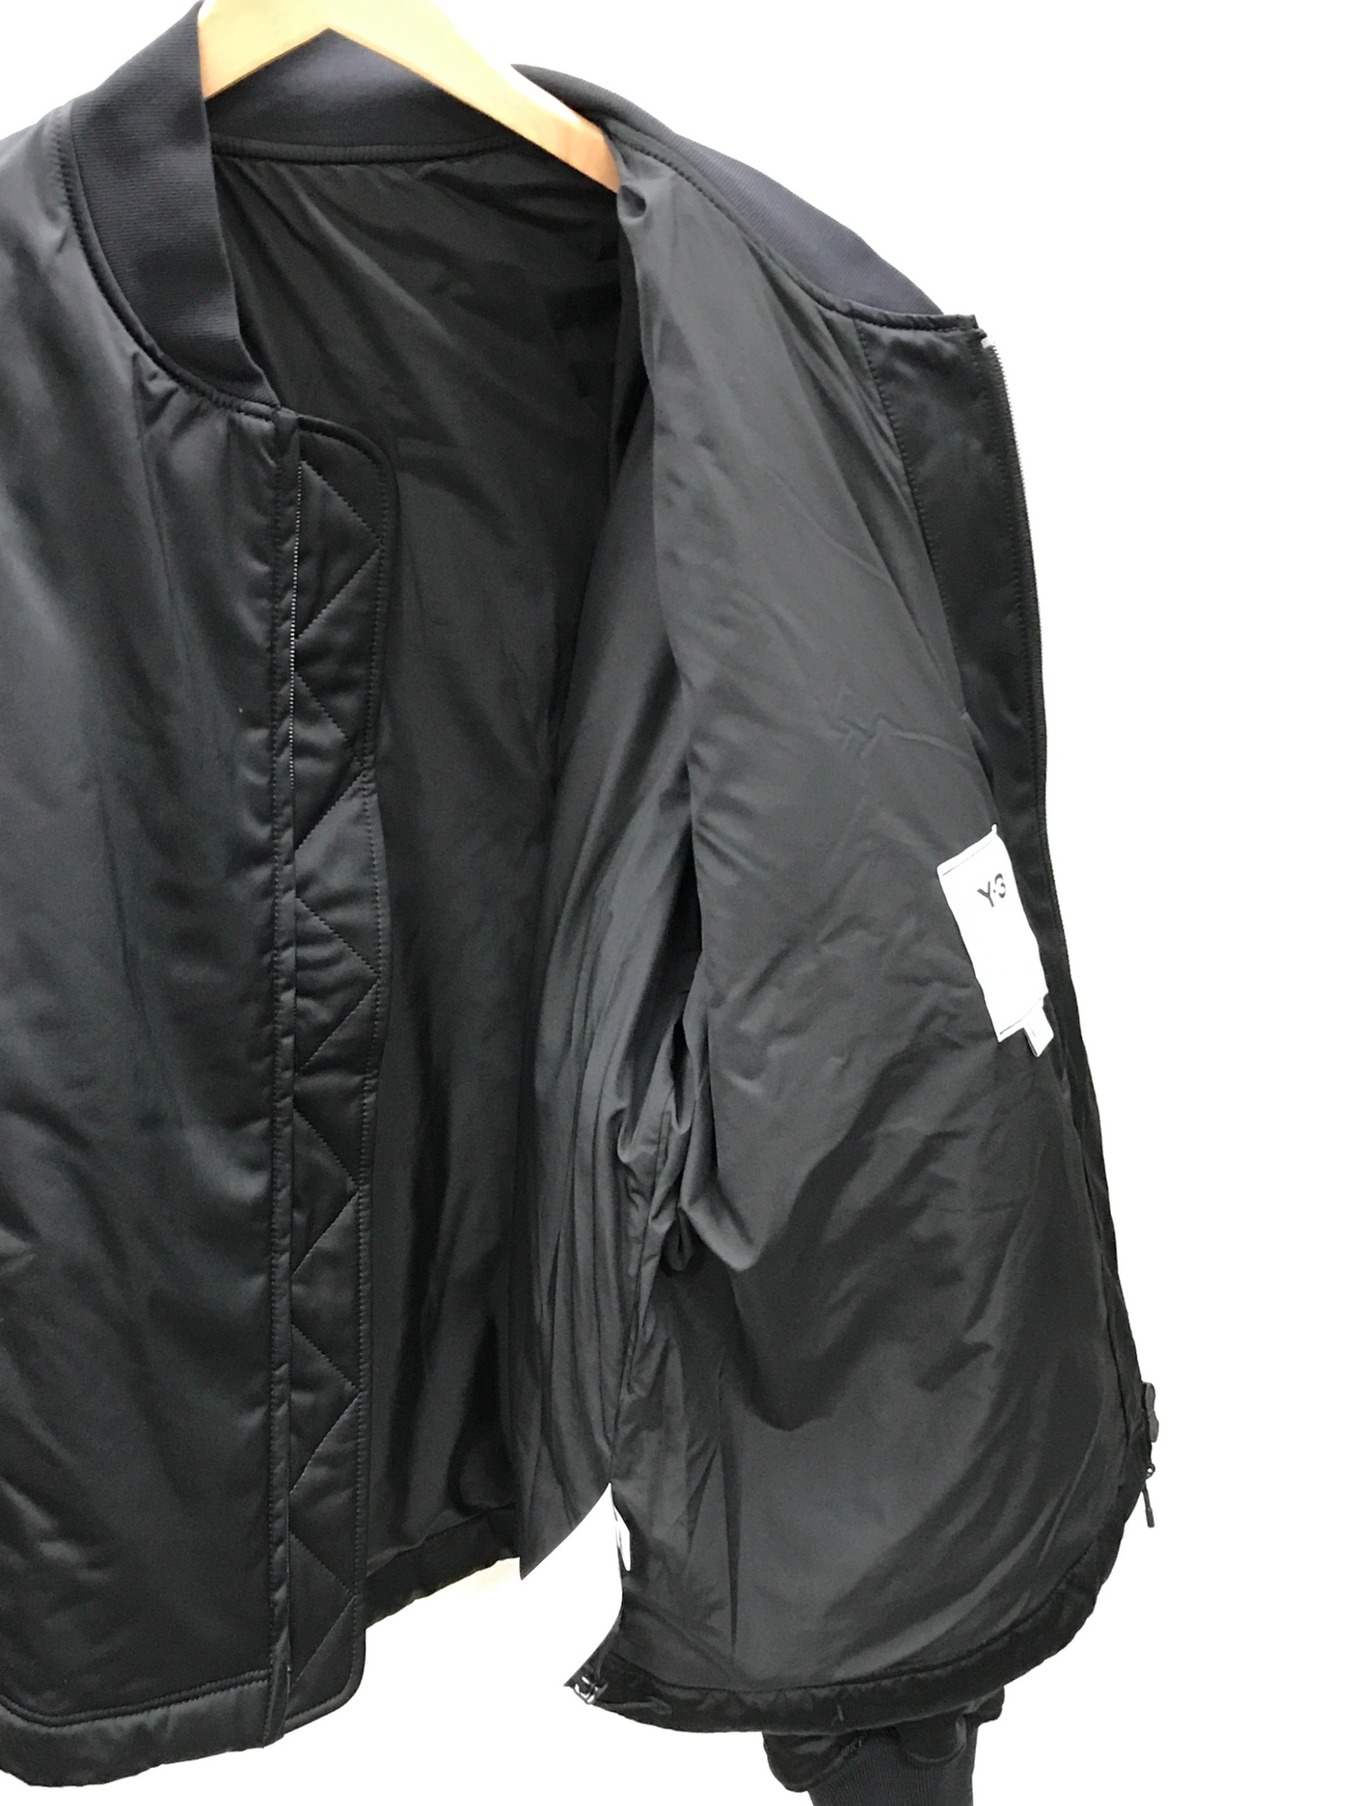 Y-3 (ワイスリー) クラシックボンバージャケット ブラック サイズ:L